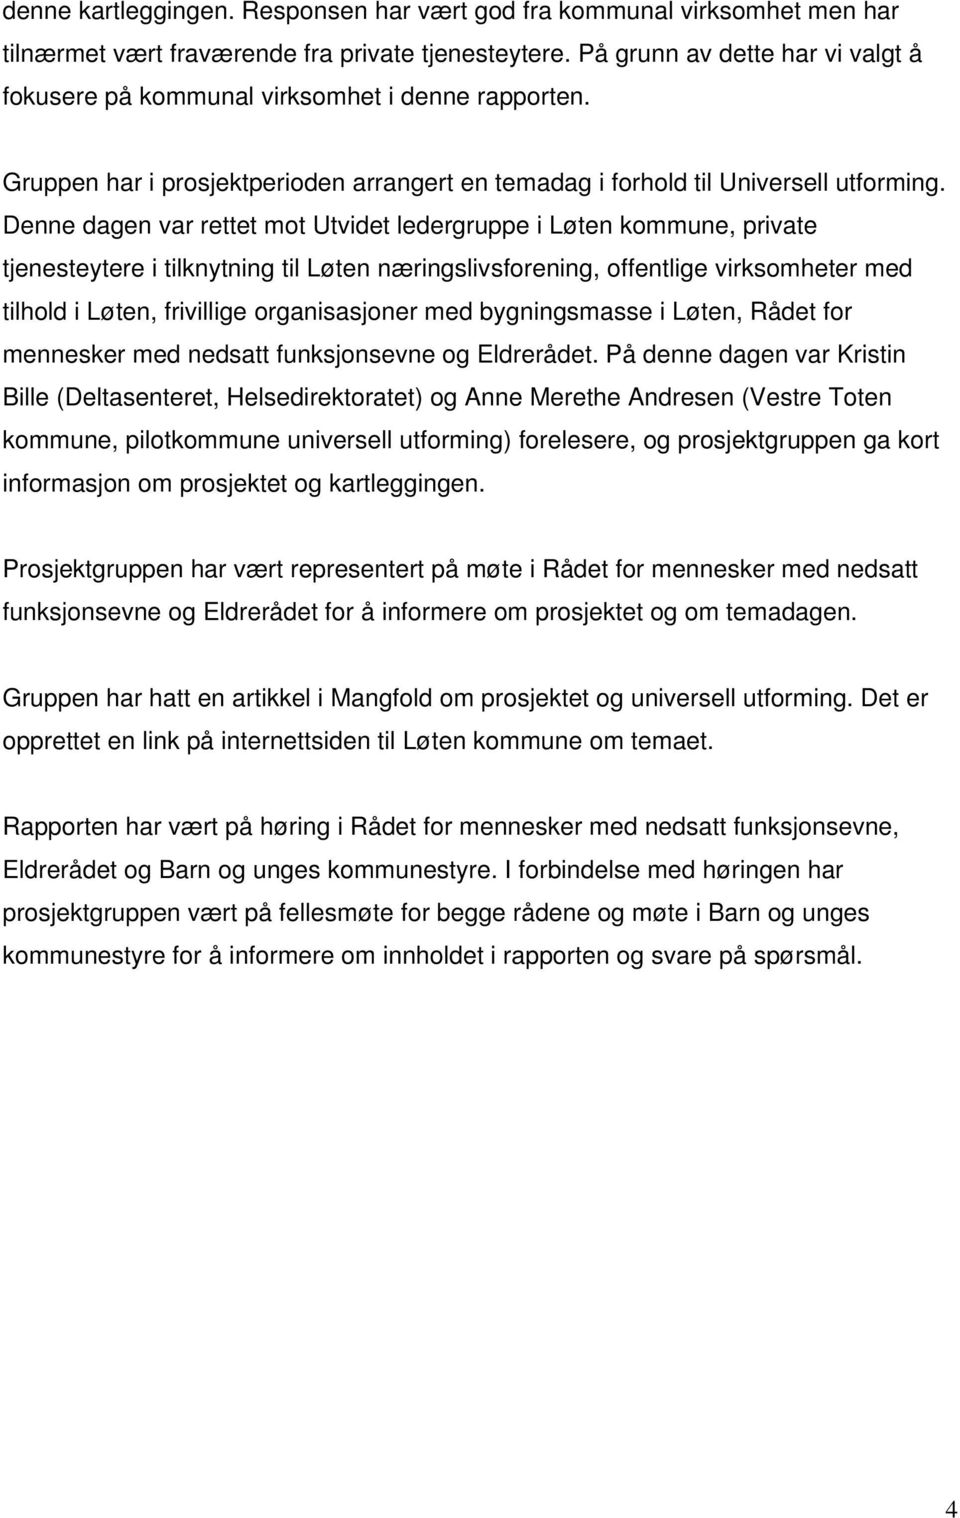 Denne dagen var rettet mot Utvidet ledergruppe i Løten kommune, private tjenesteytere i tilknytning til Løten næringslivsforening, offentlige virksomheter med tilhold i Løten, frivillige